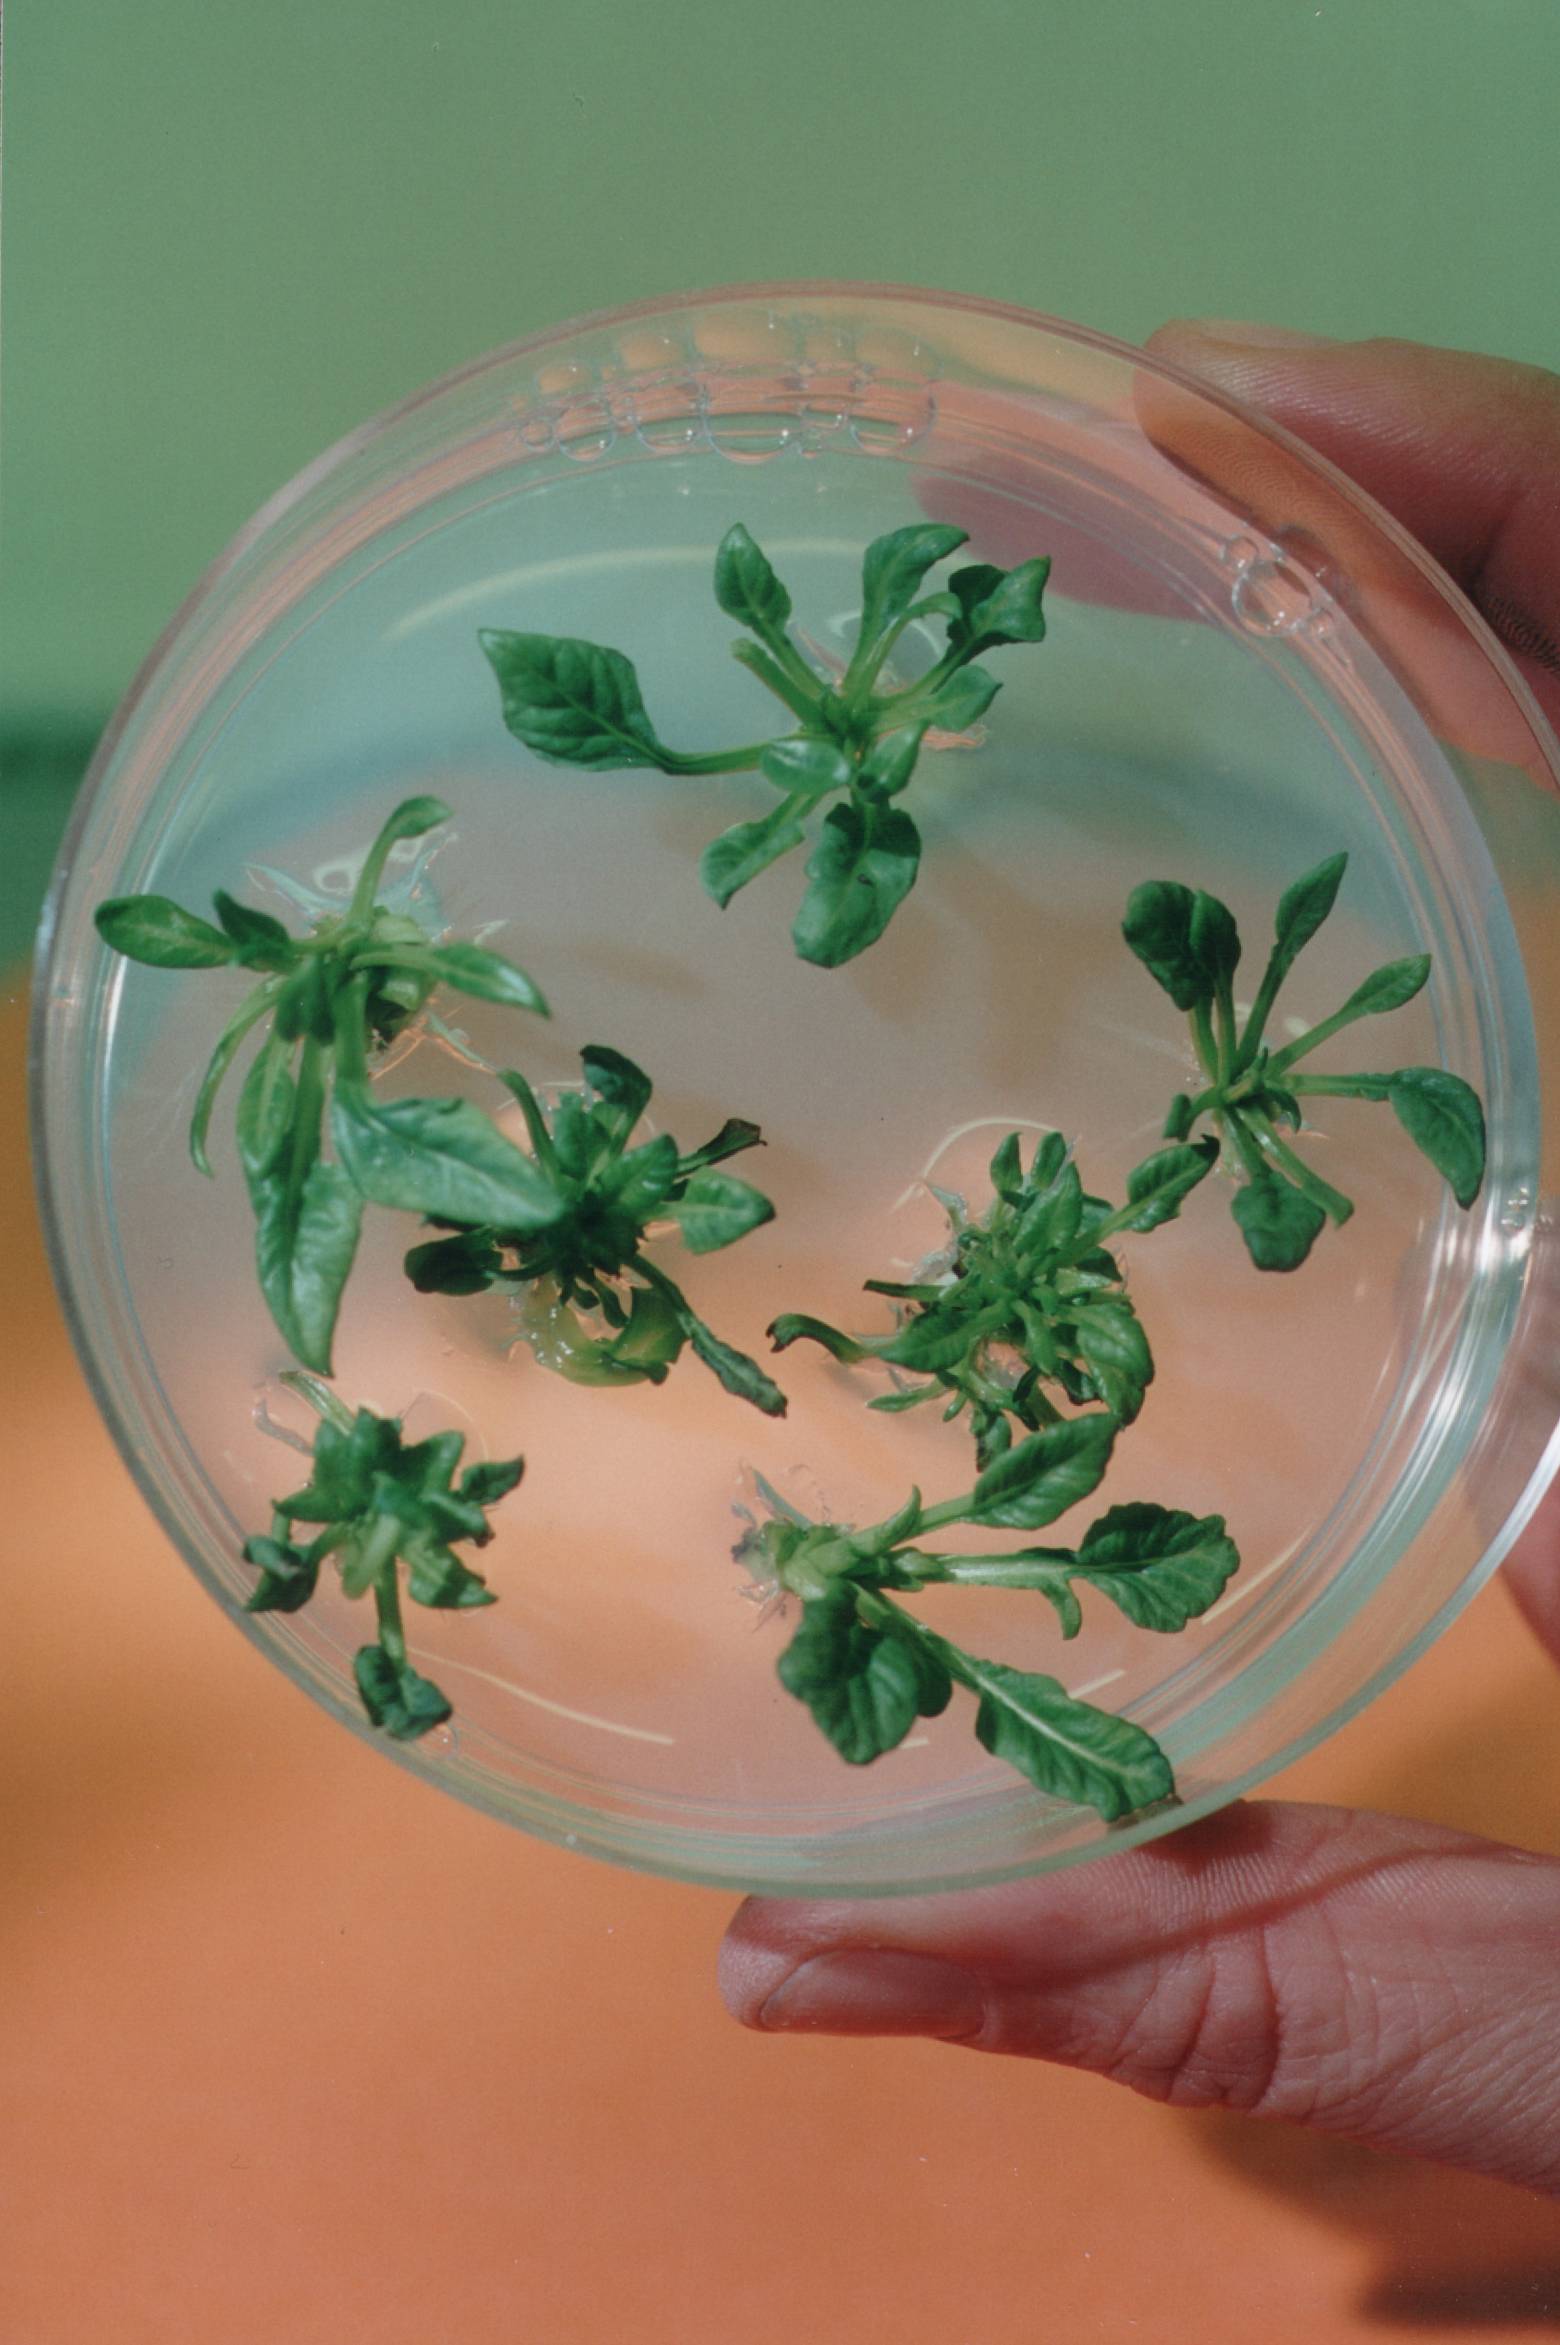 Boîte de Pétri avec des plants de betterave in vitro